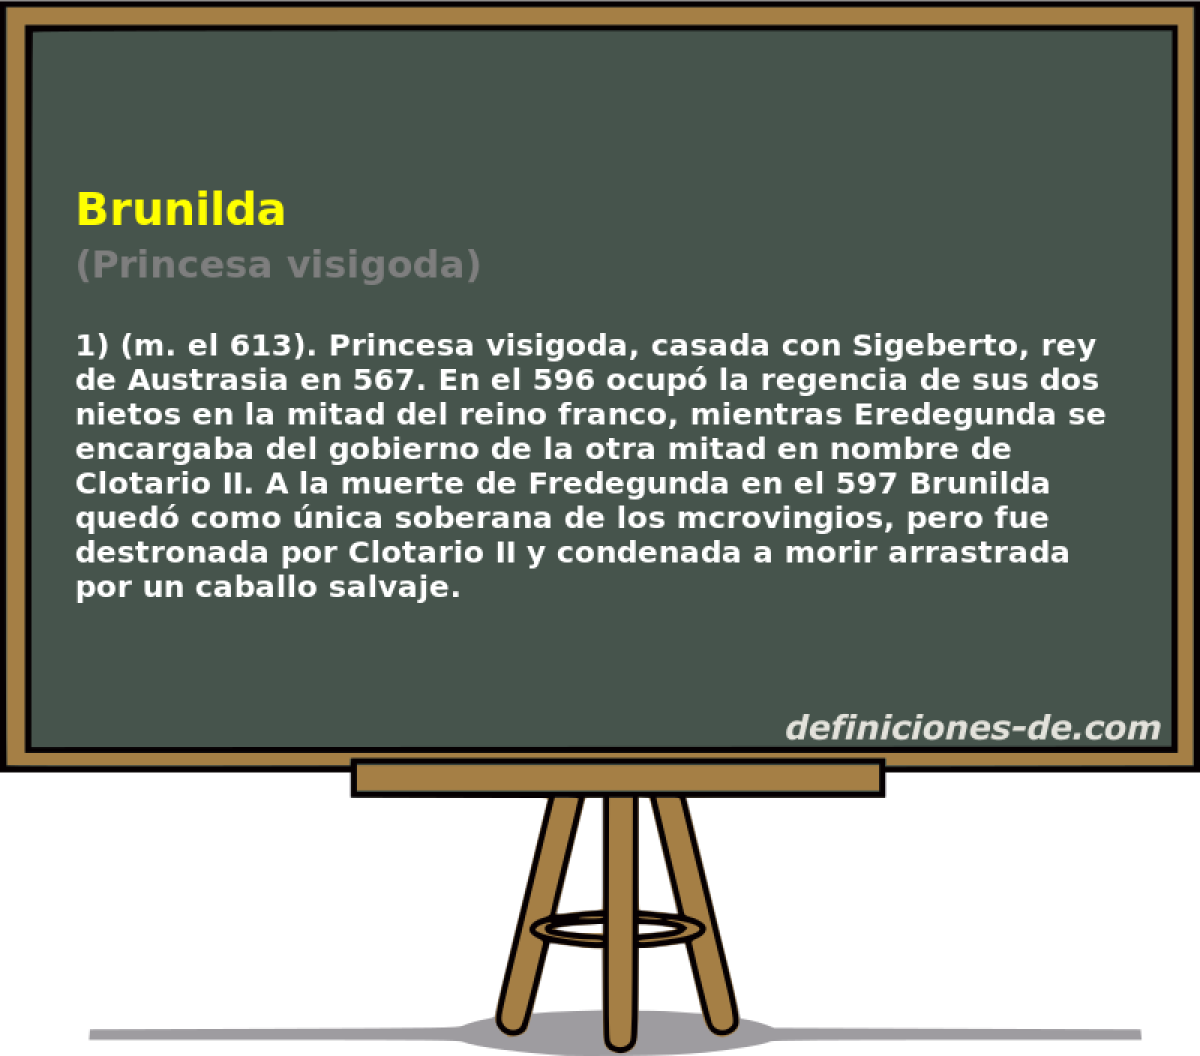 Brunilda (Princesa visigoda)